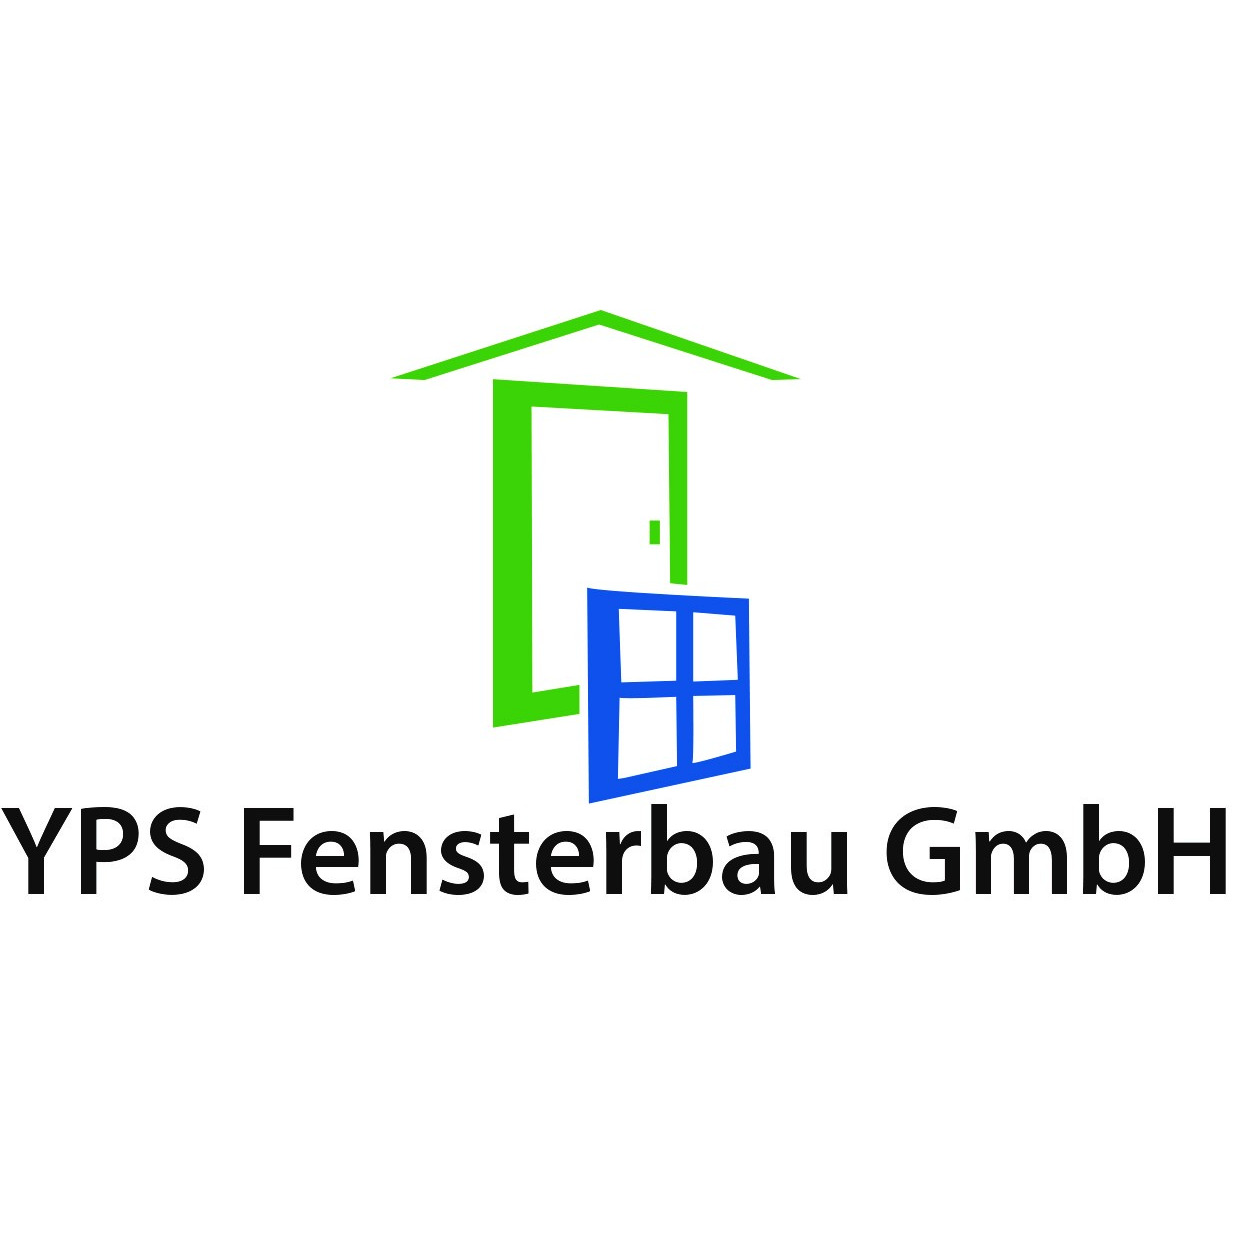 YPS Fensterbau GmbH